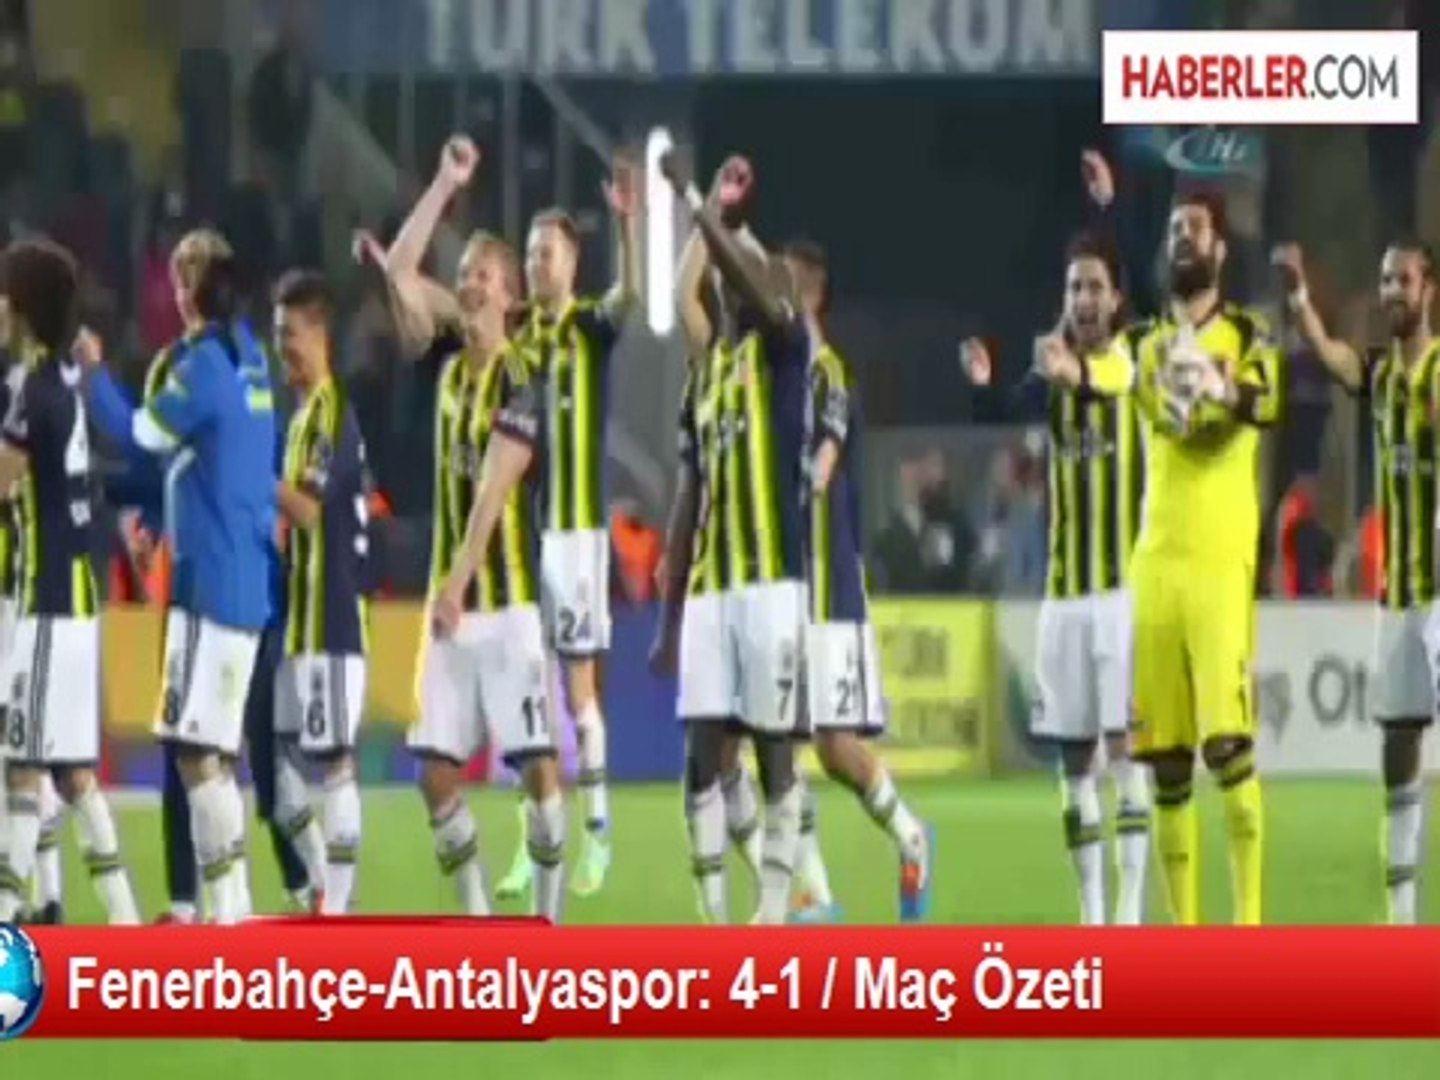 Fenerbahçe-Antalyaspor: 4-1 / Maç Özeti - Dailymotion Video